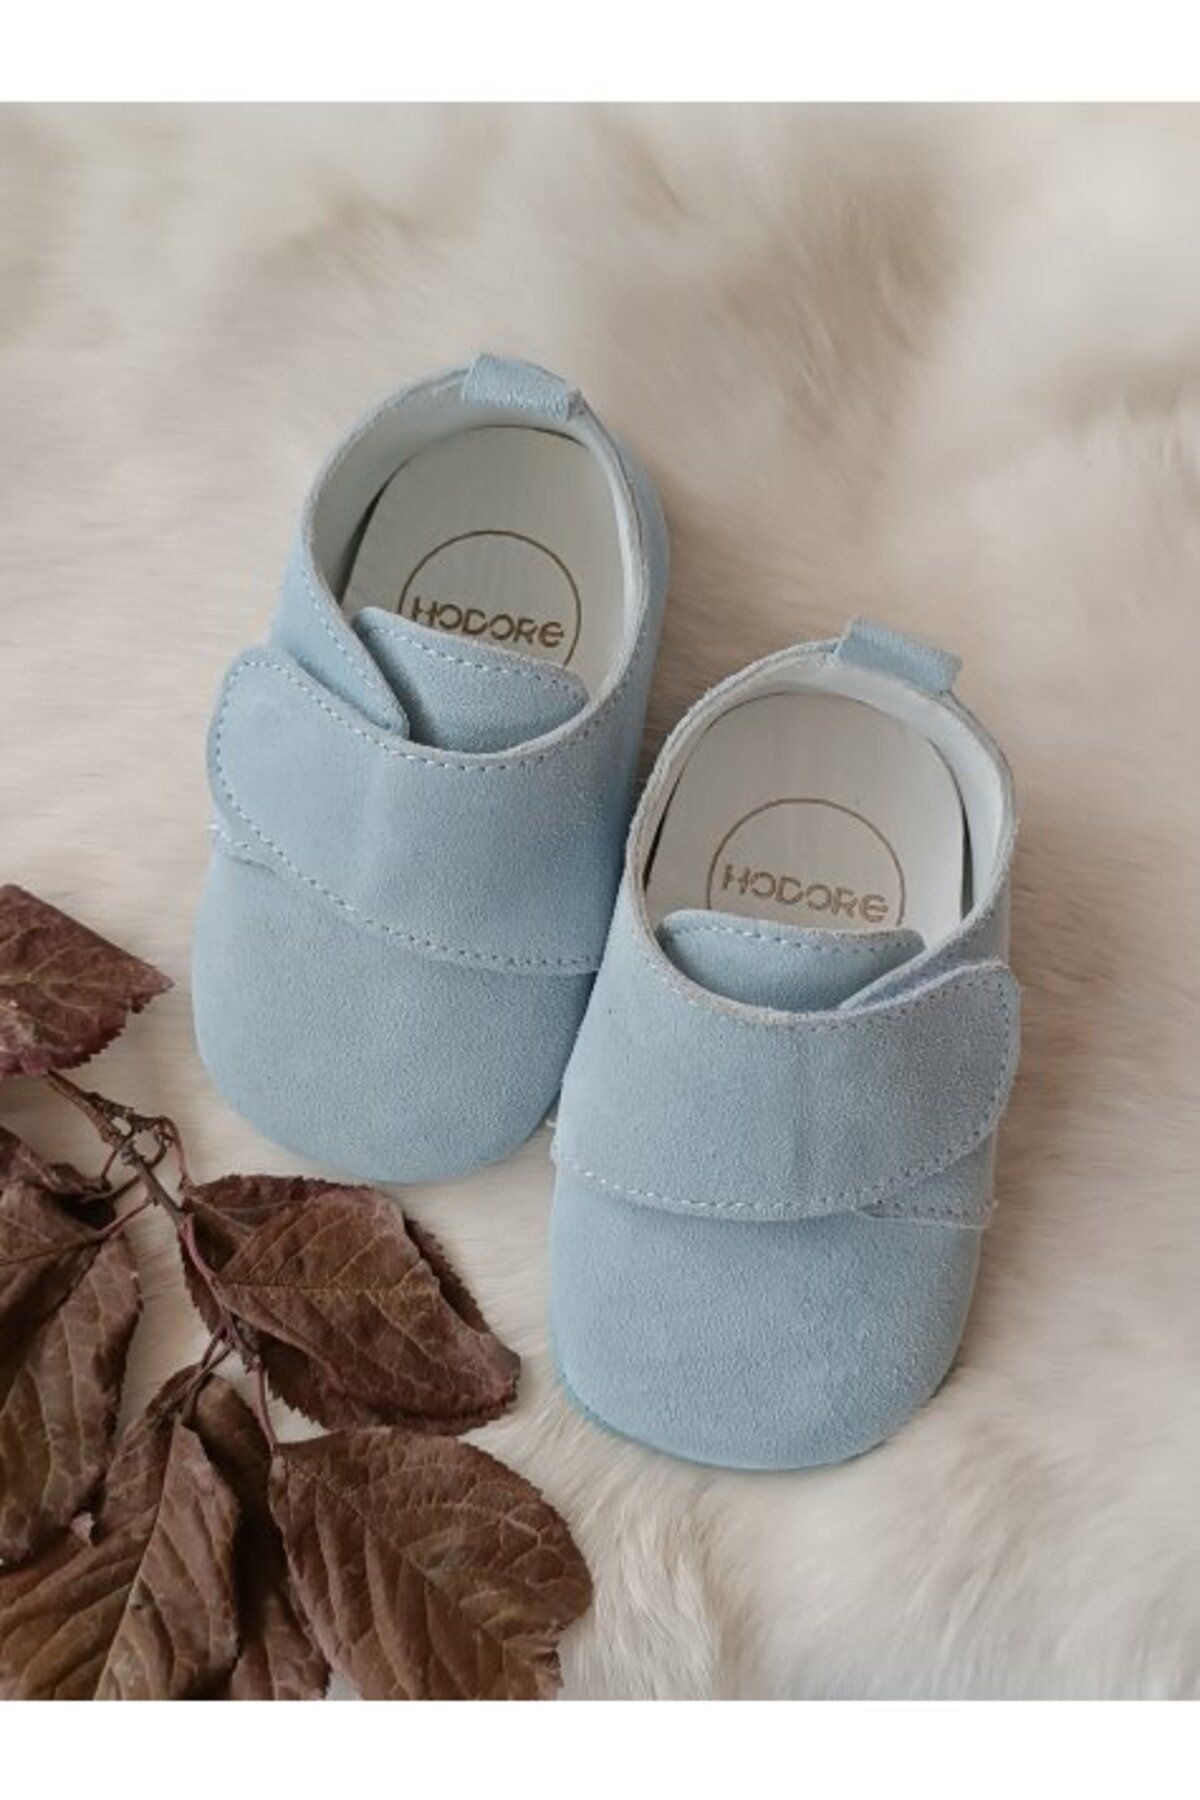 Hodore Bebe Mavi Hakiki Deri Cırt Cırtlı Bebek Ayakkabı